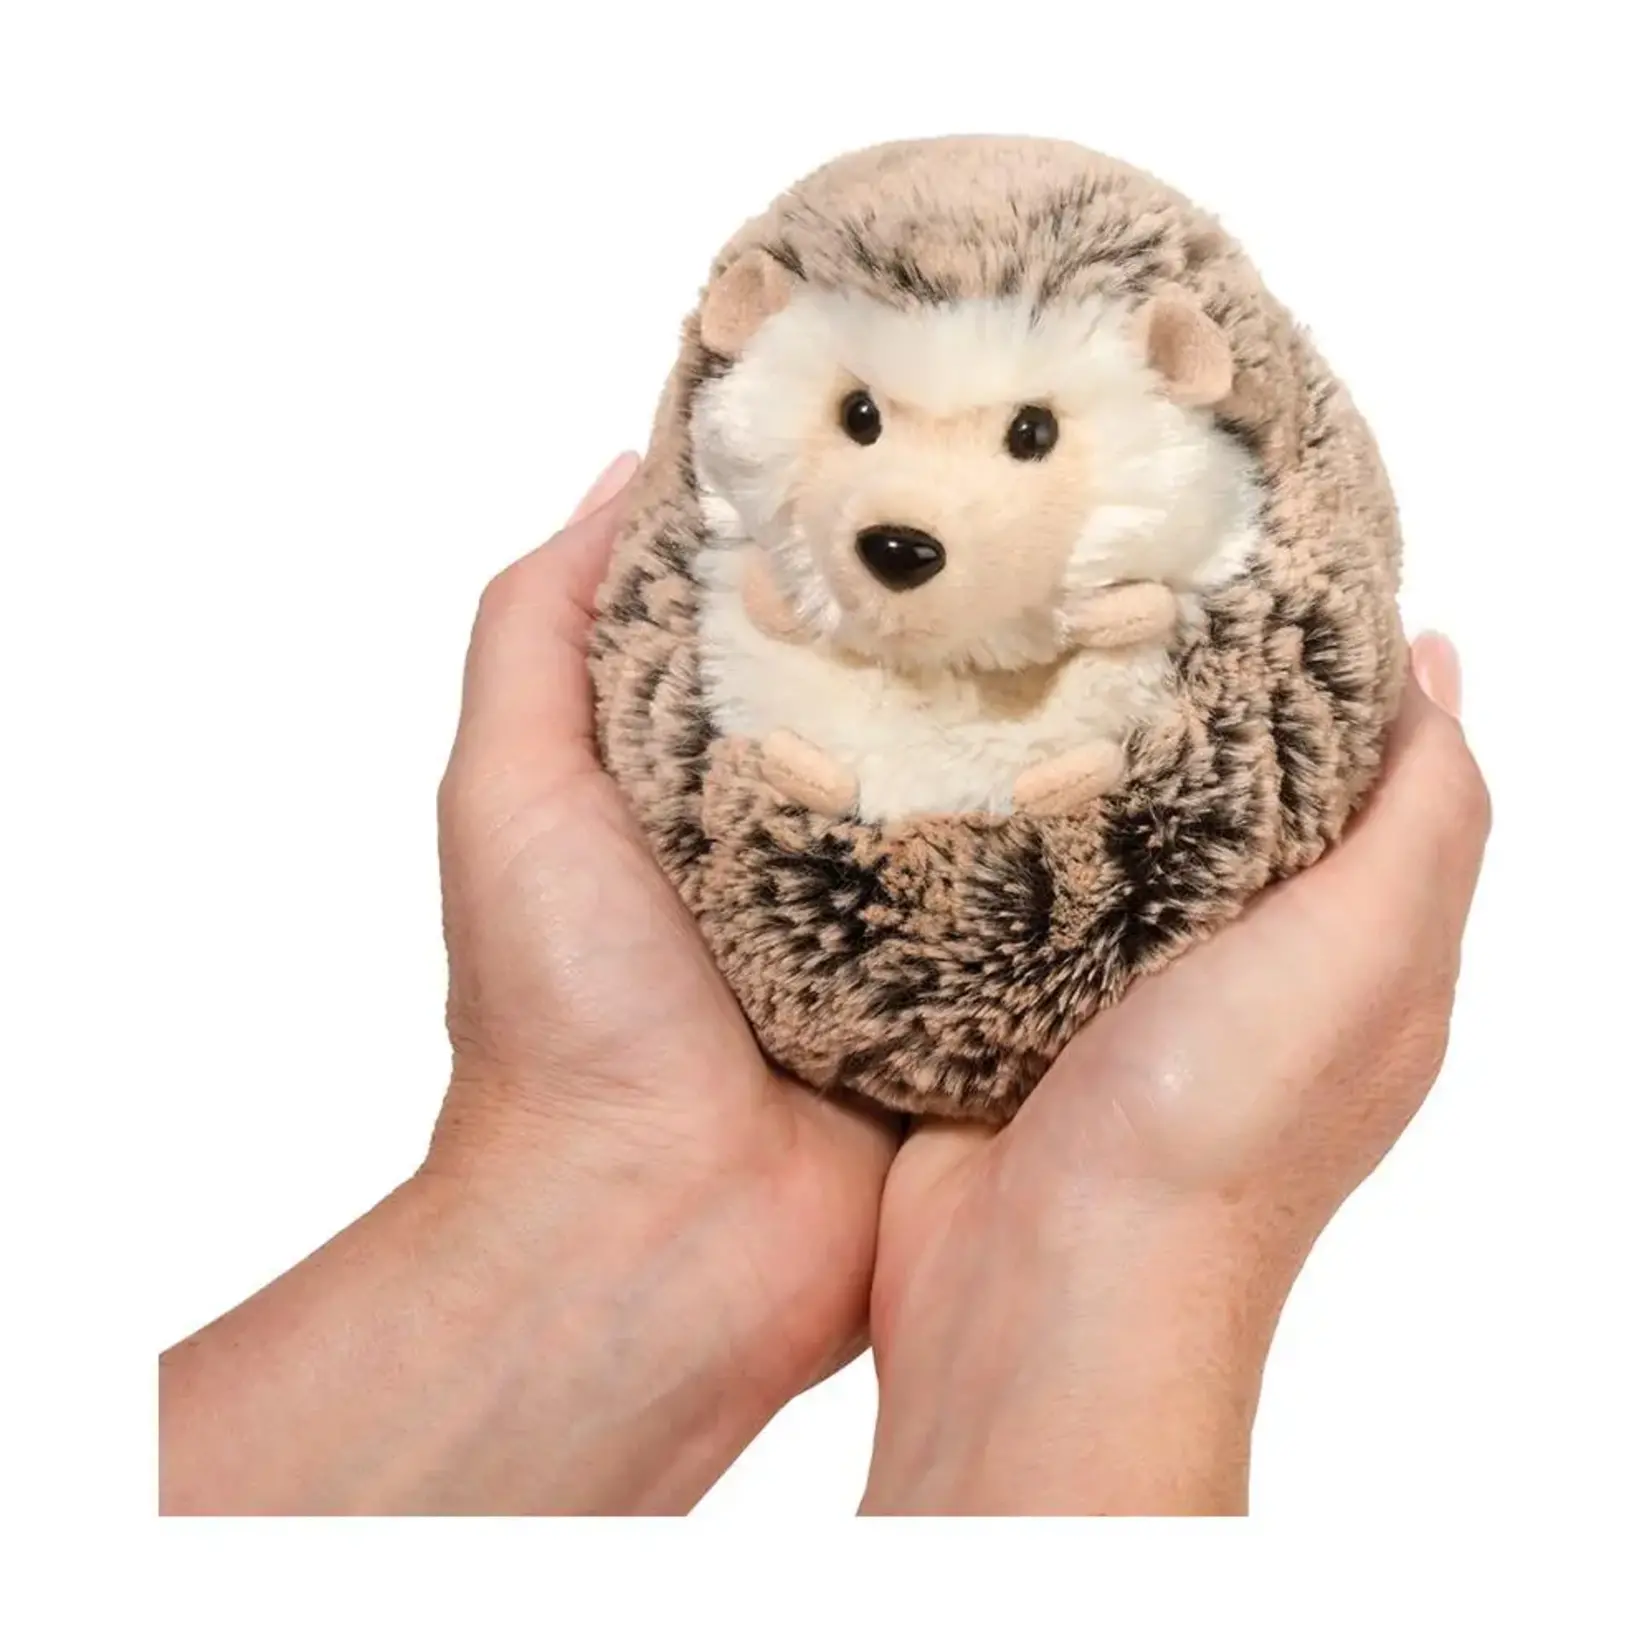 Spunky Hedgehog Plush